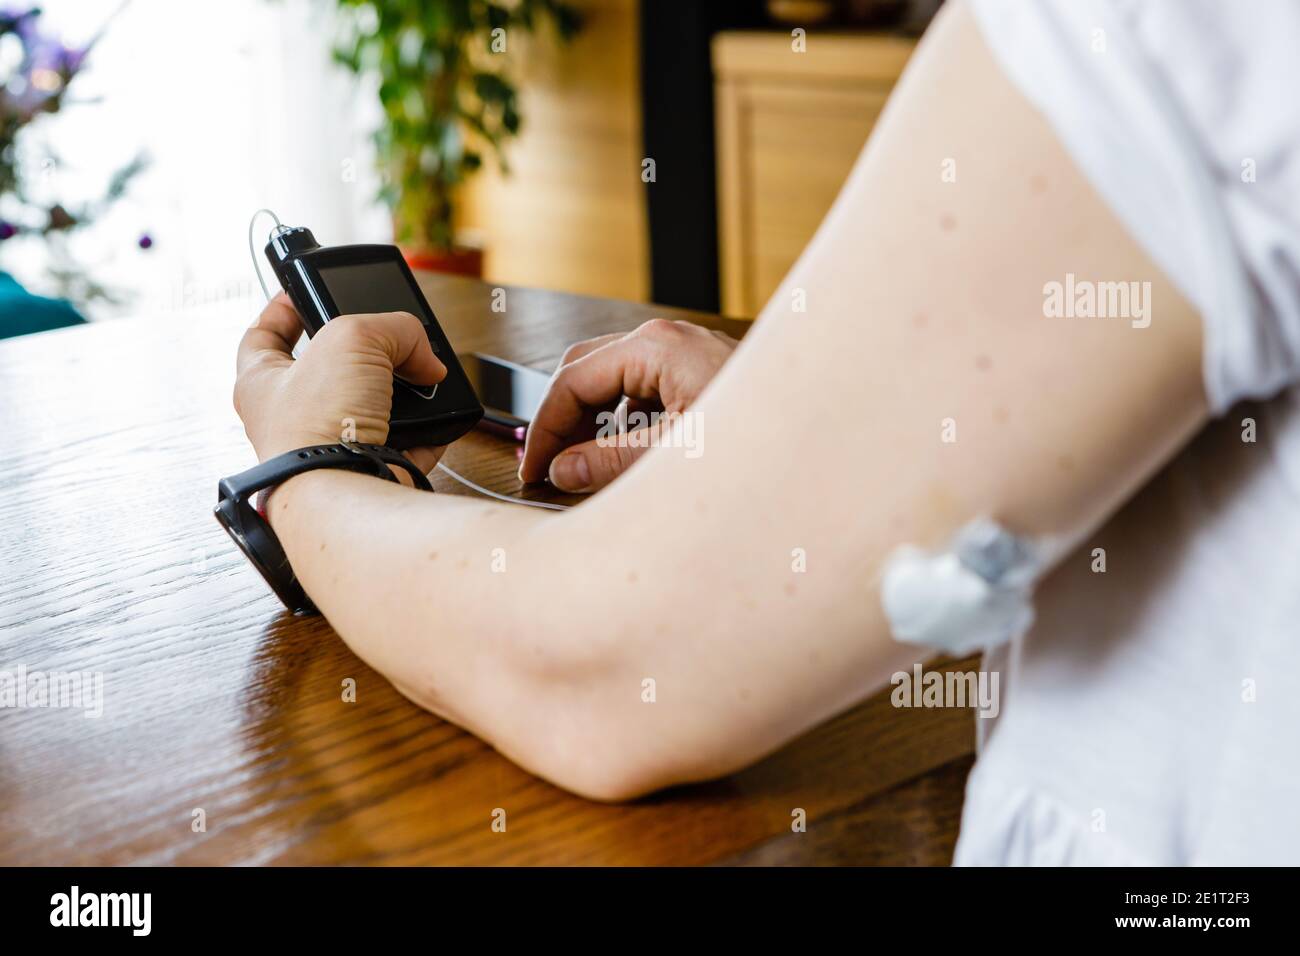 Traitement moderne du diabète, femme vérifiant le niveau de glucose et doser l'insuline à l'aide d'une pompe à insuline et d'un capteur à distance sur sa main, se concentrer sur l'arrière-plan Banque D'Images